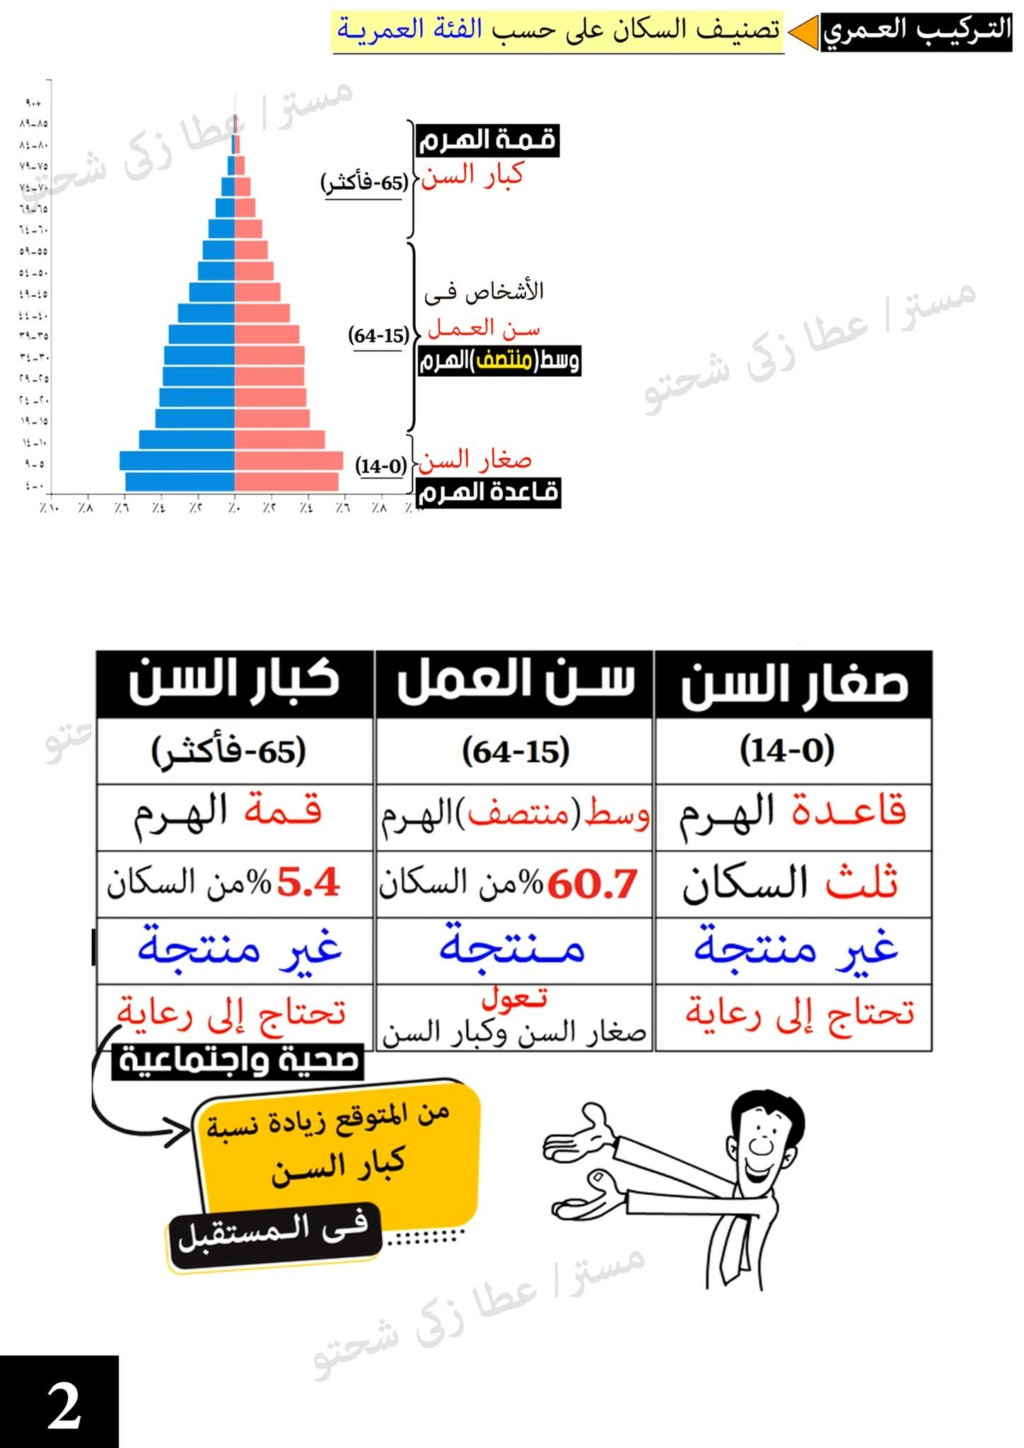 عطا زكى شحتو - الهرم السكاني في مصر دراسات خامسة ابتدائي مستر عطا زكي شحتو 2445